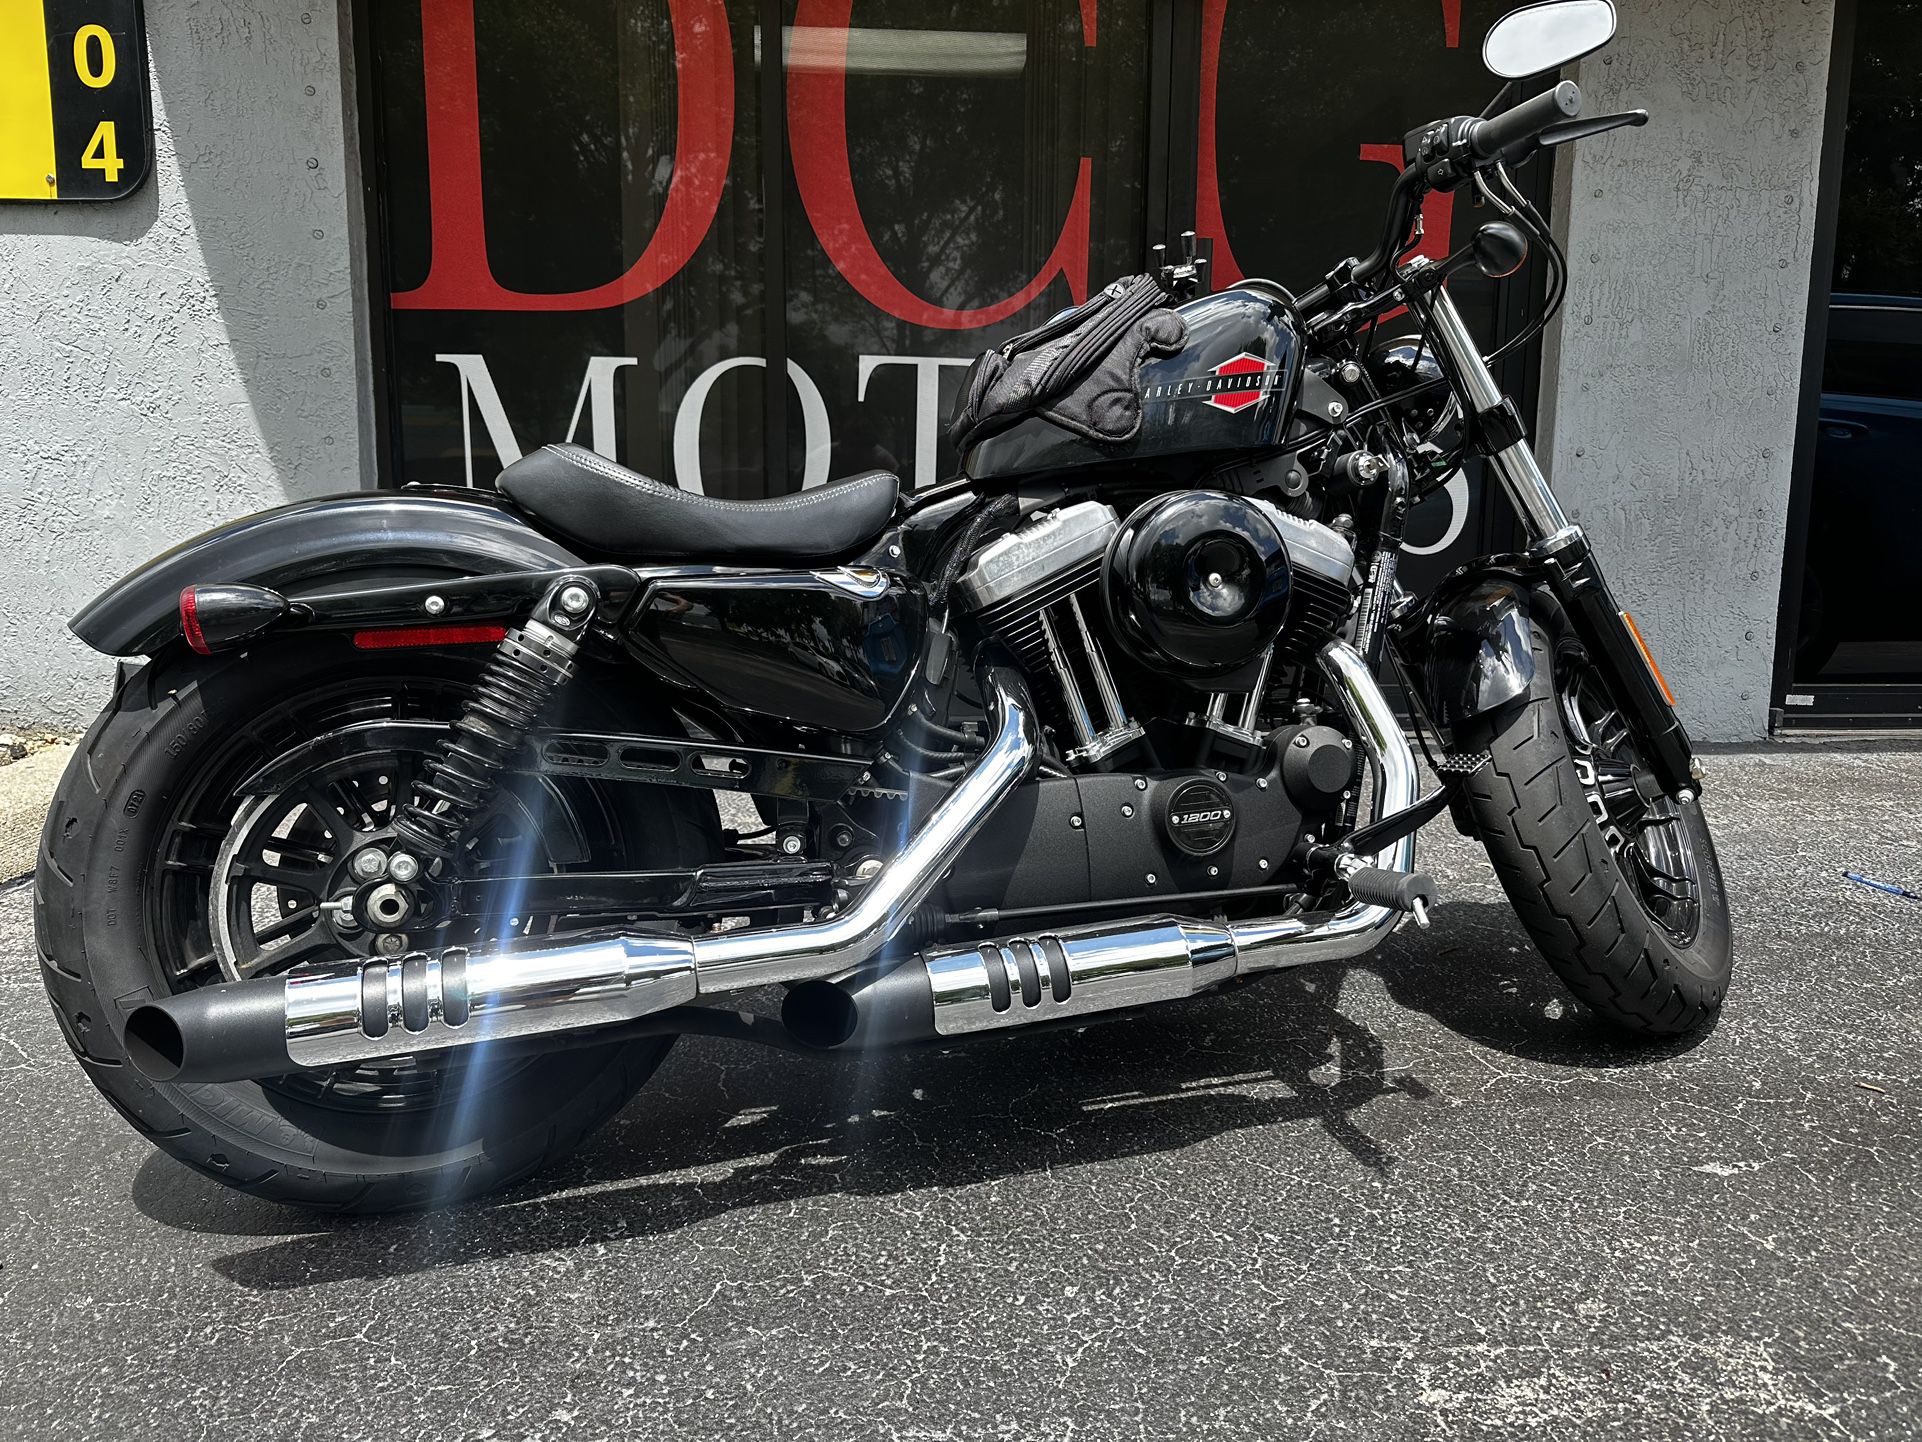 2021 Harley 1200 sportster